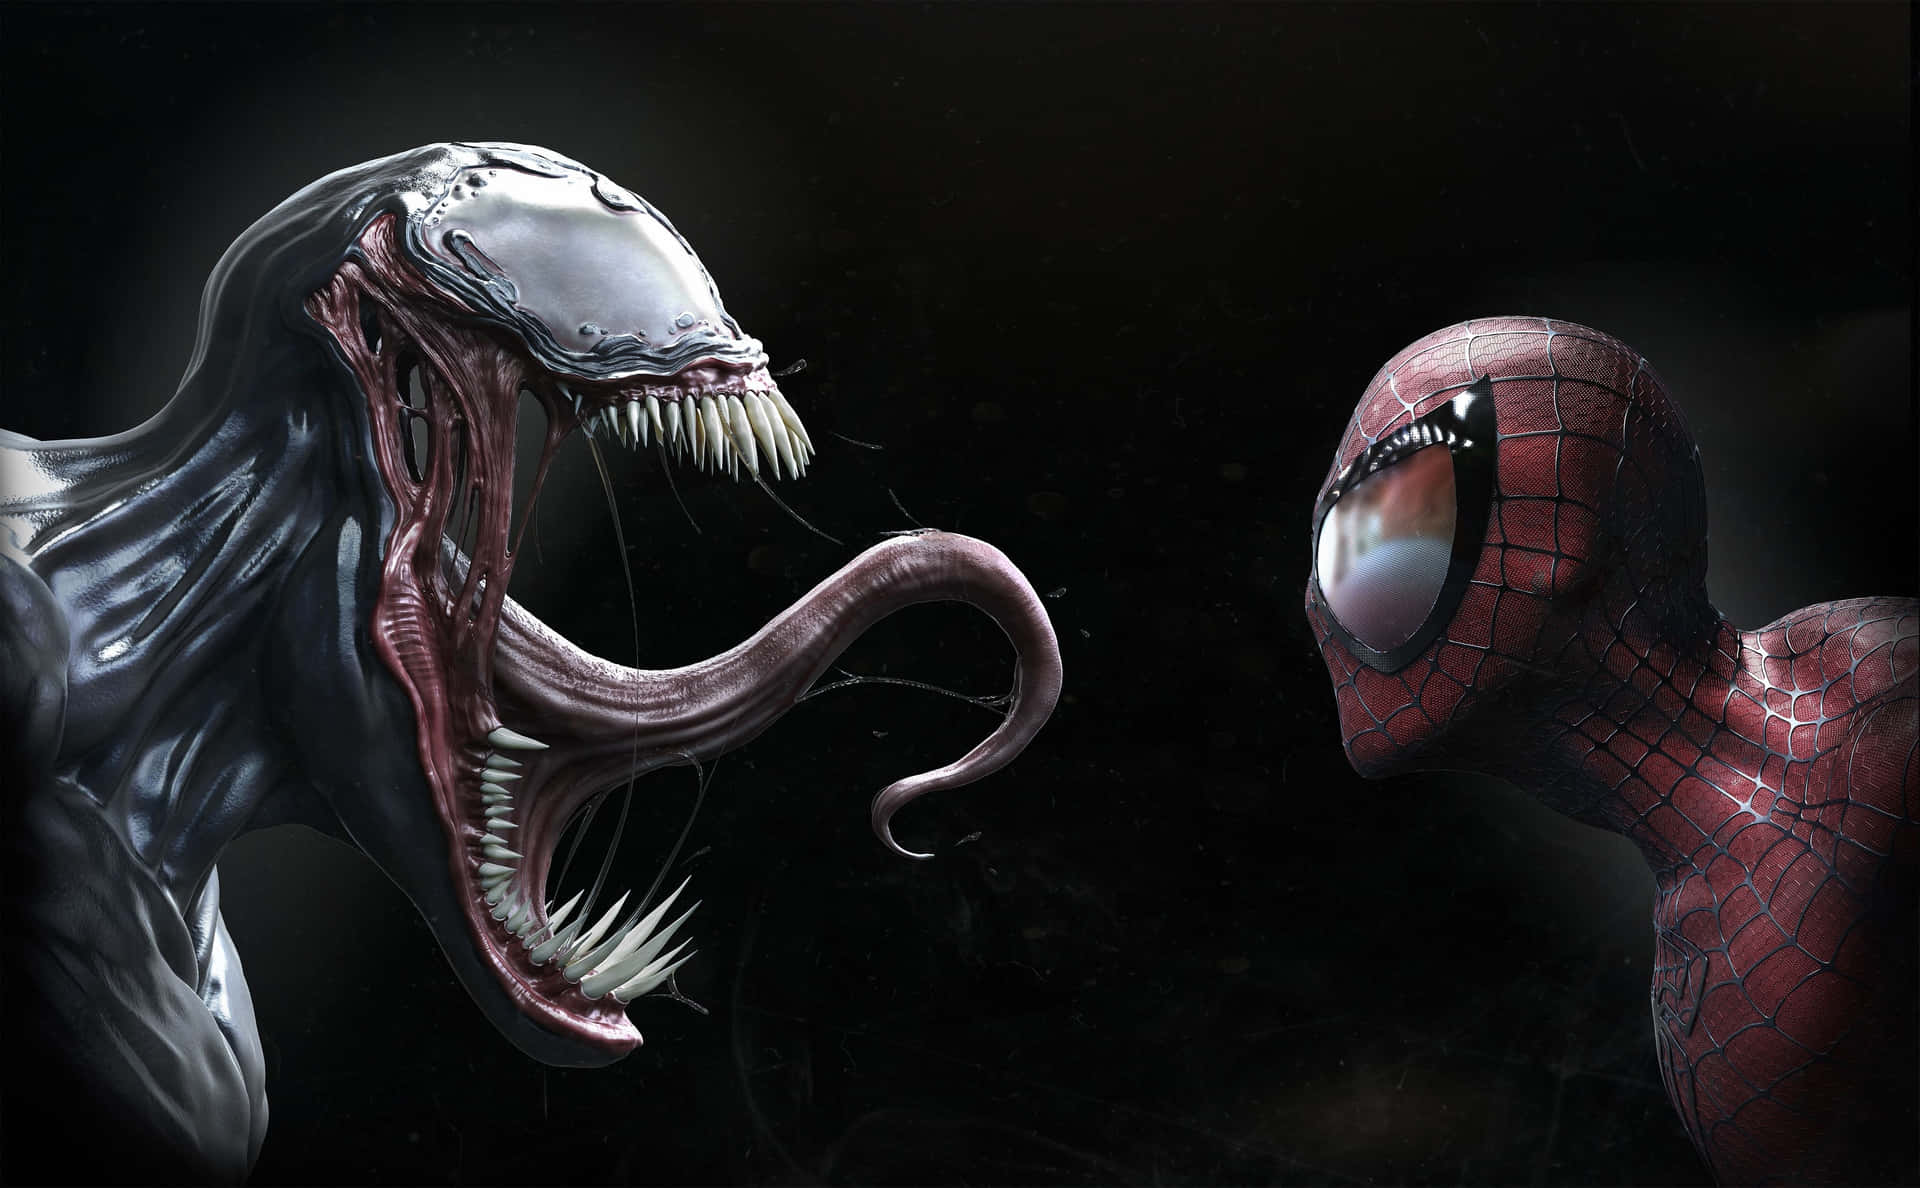 Venomoch Spiderman Står Ansikte Mot Ansikte På Min Bakgrundsbild. Wallpaper